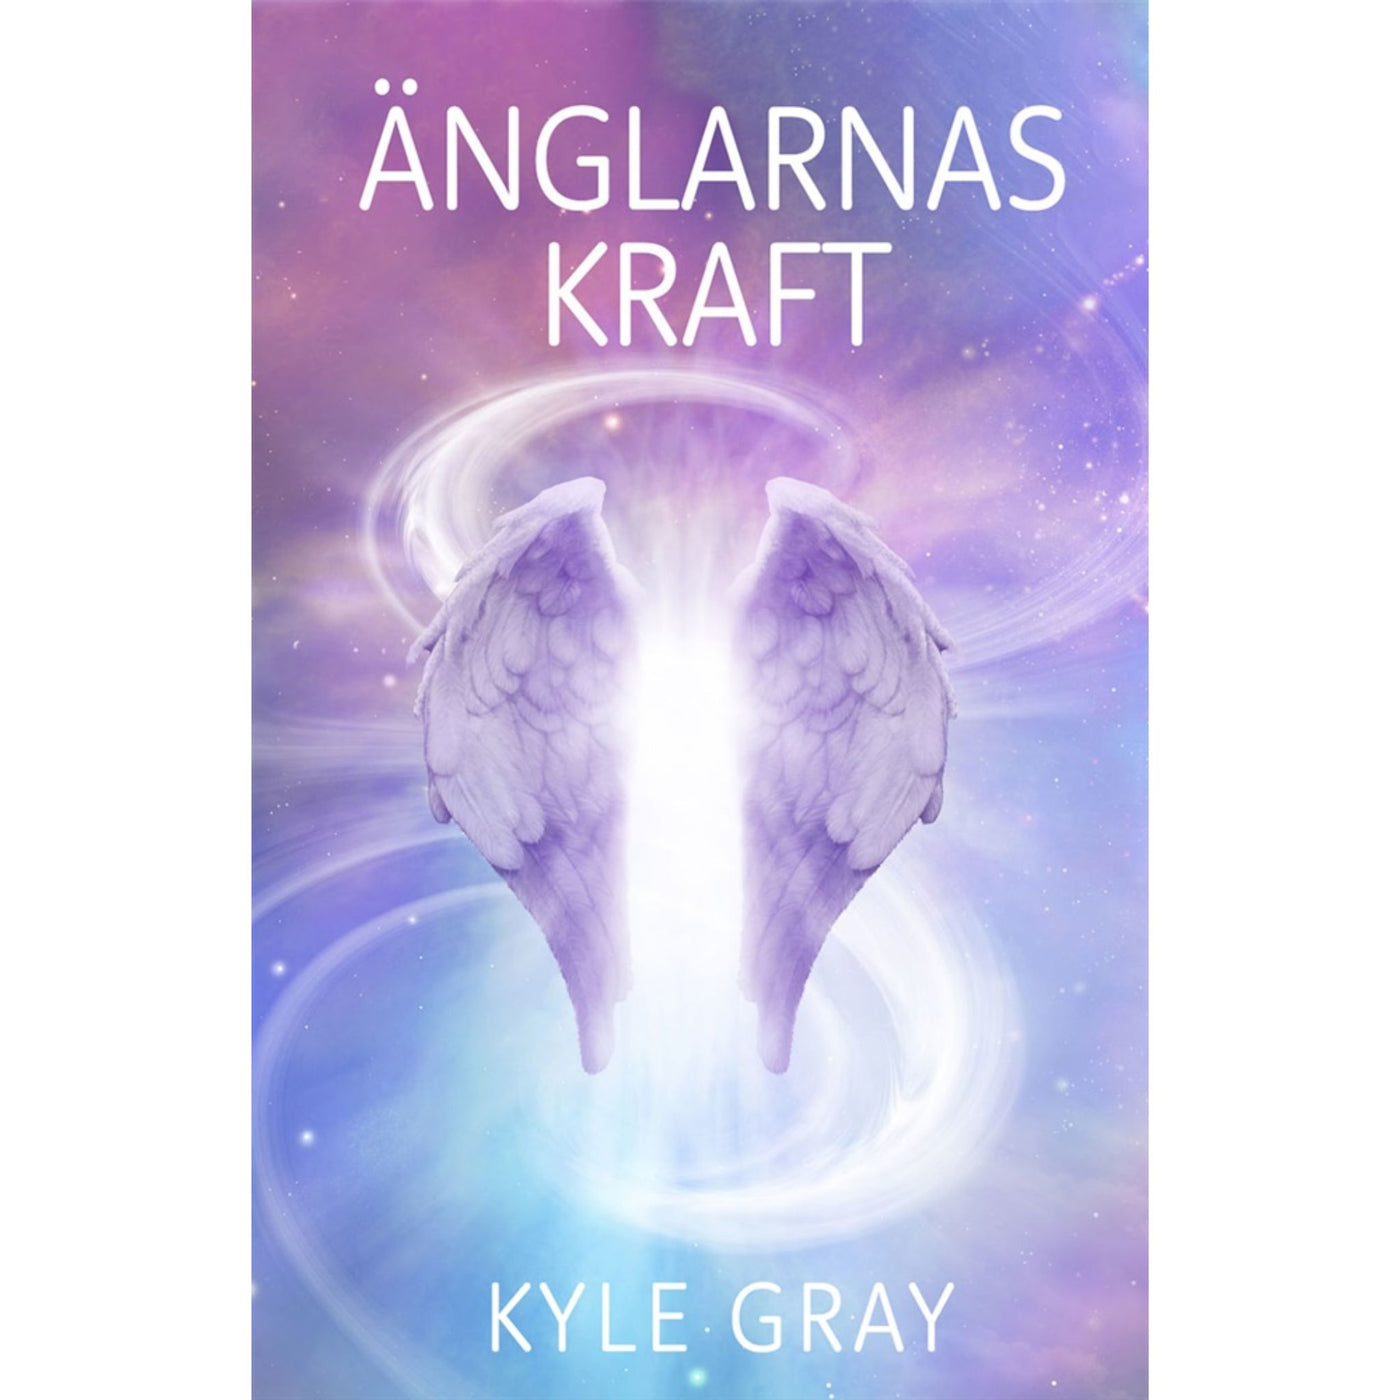 Änglarnas kraft - bok av Kyle Gray